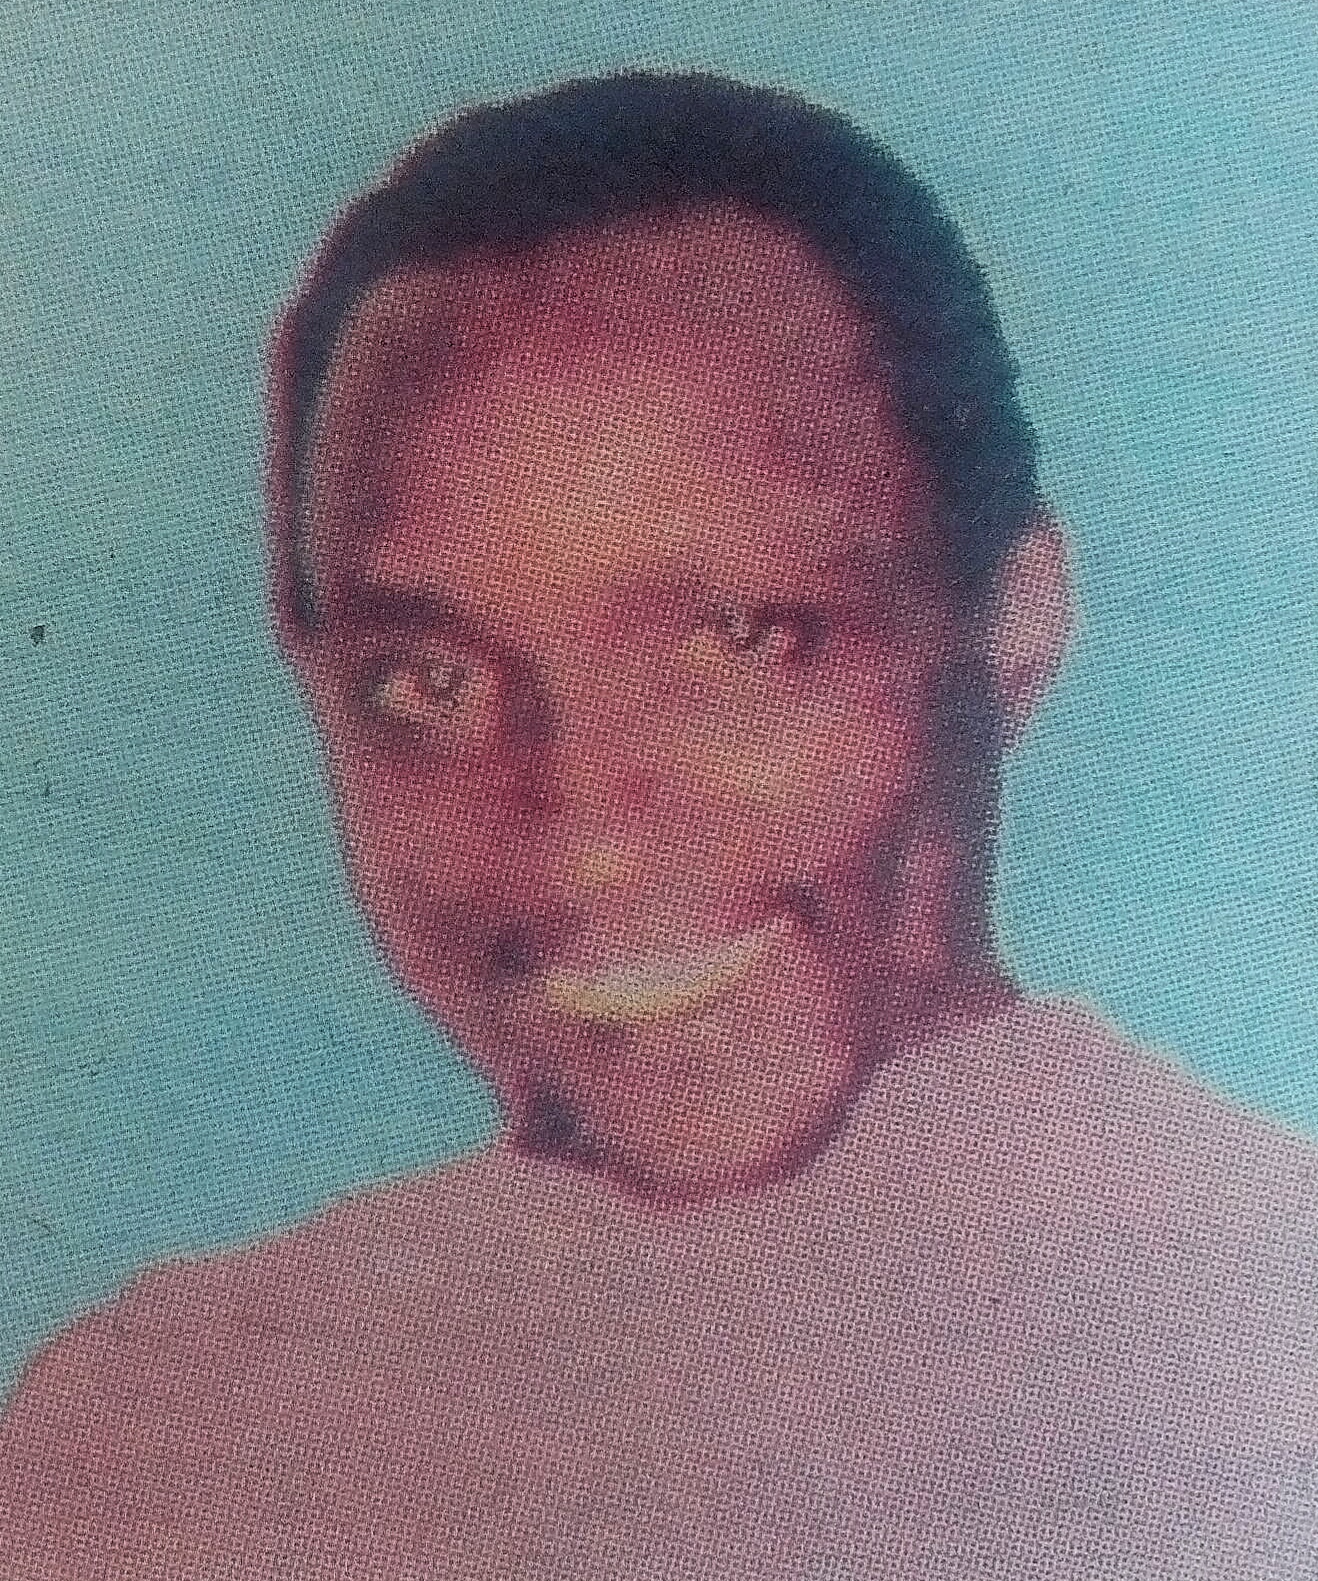 Obituary Image of lsaac Maina Kabiri